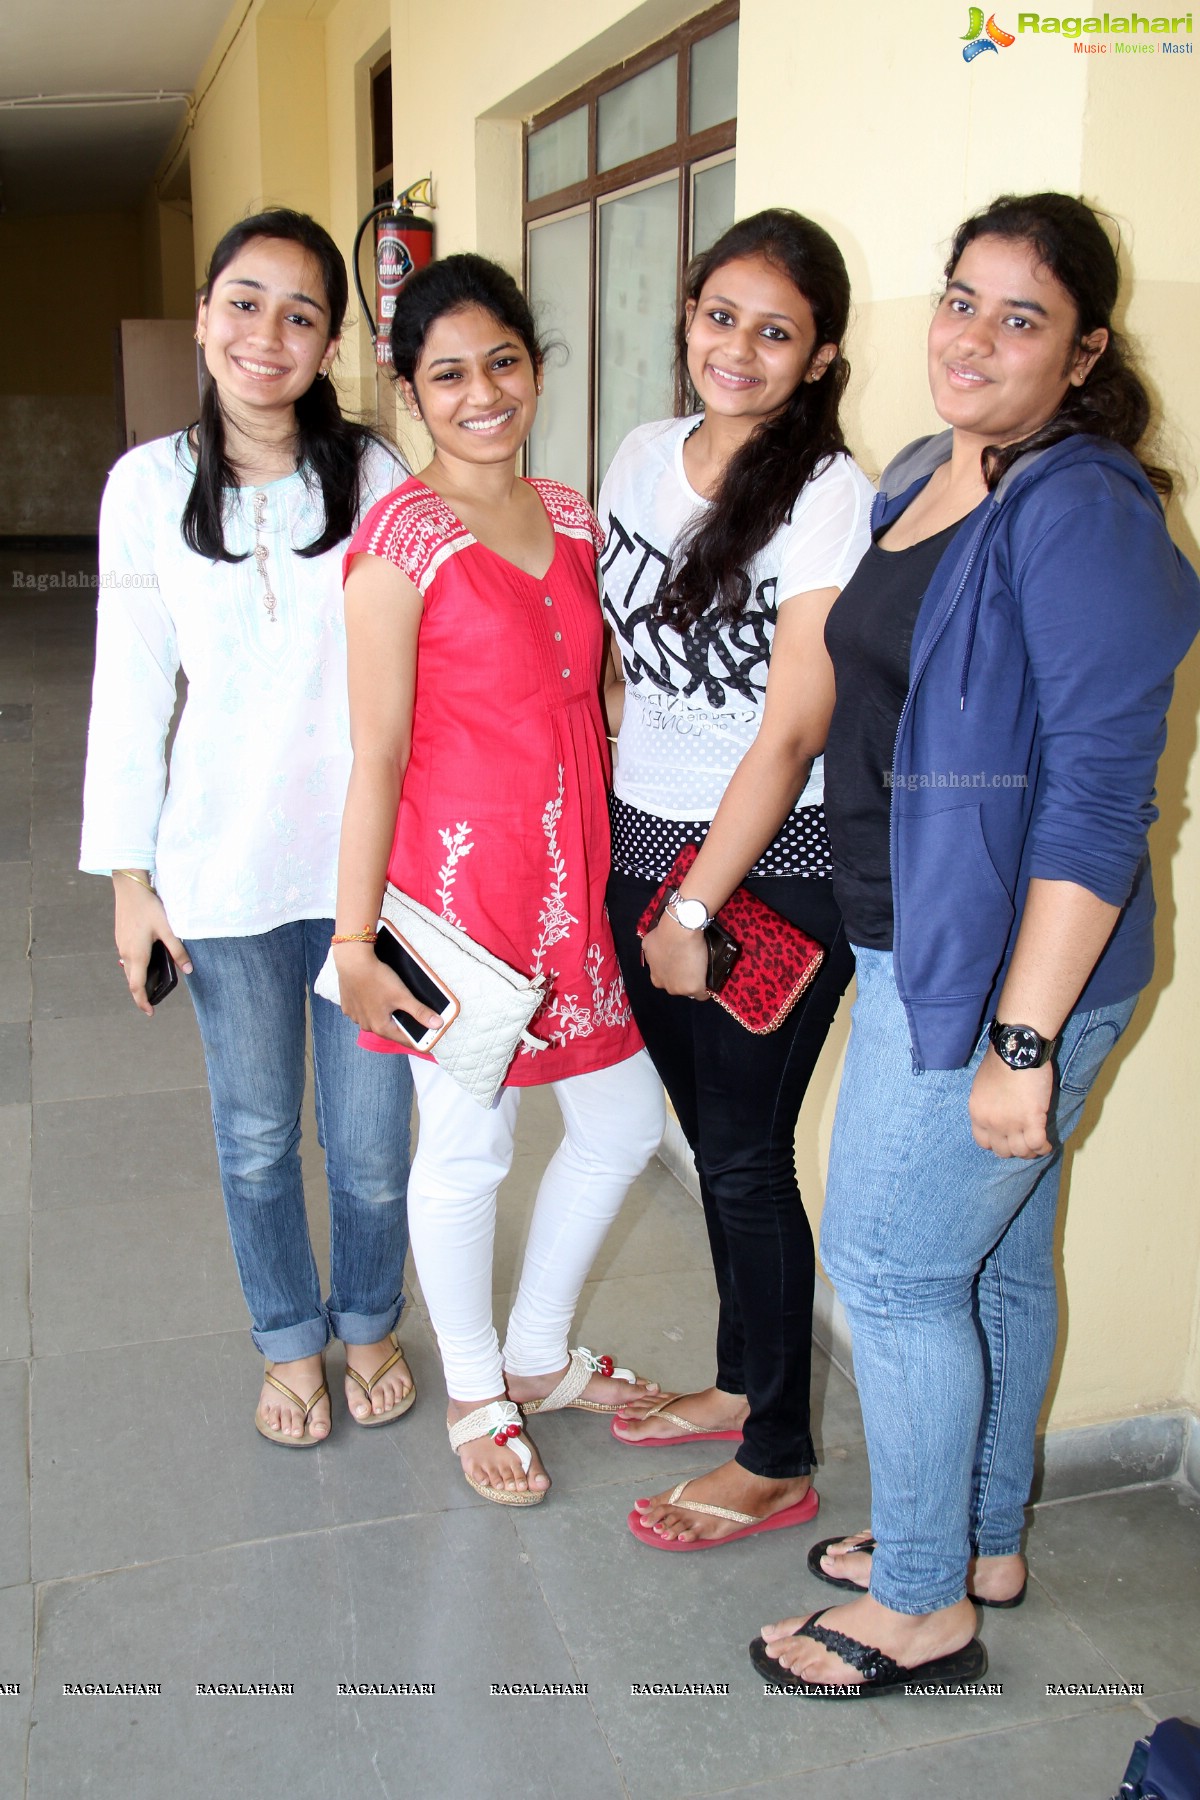 MediaSphere at St. Franics College For Women, Begumpet, Hyderabad.